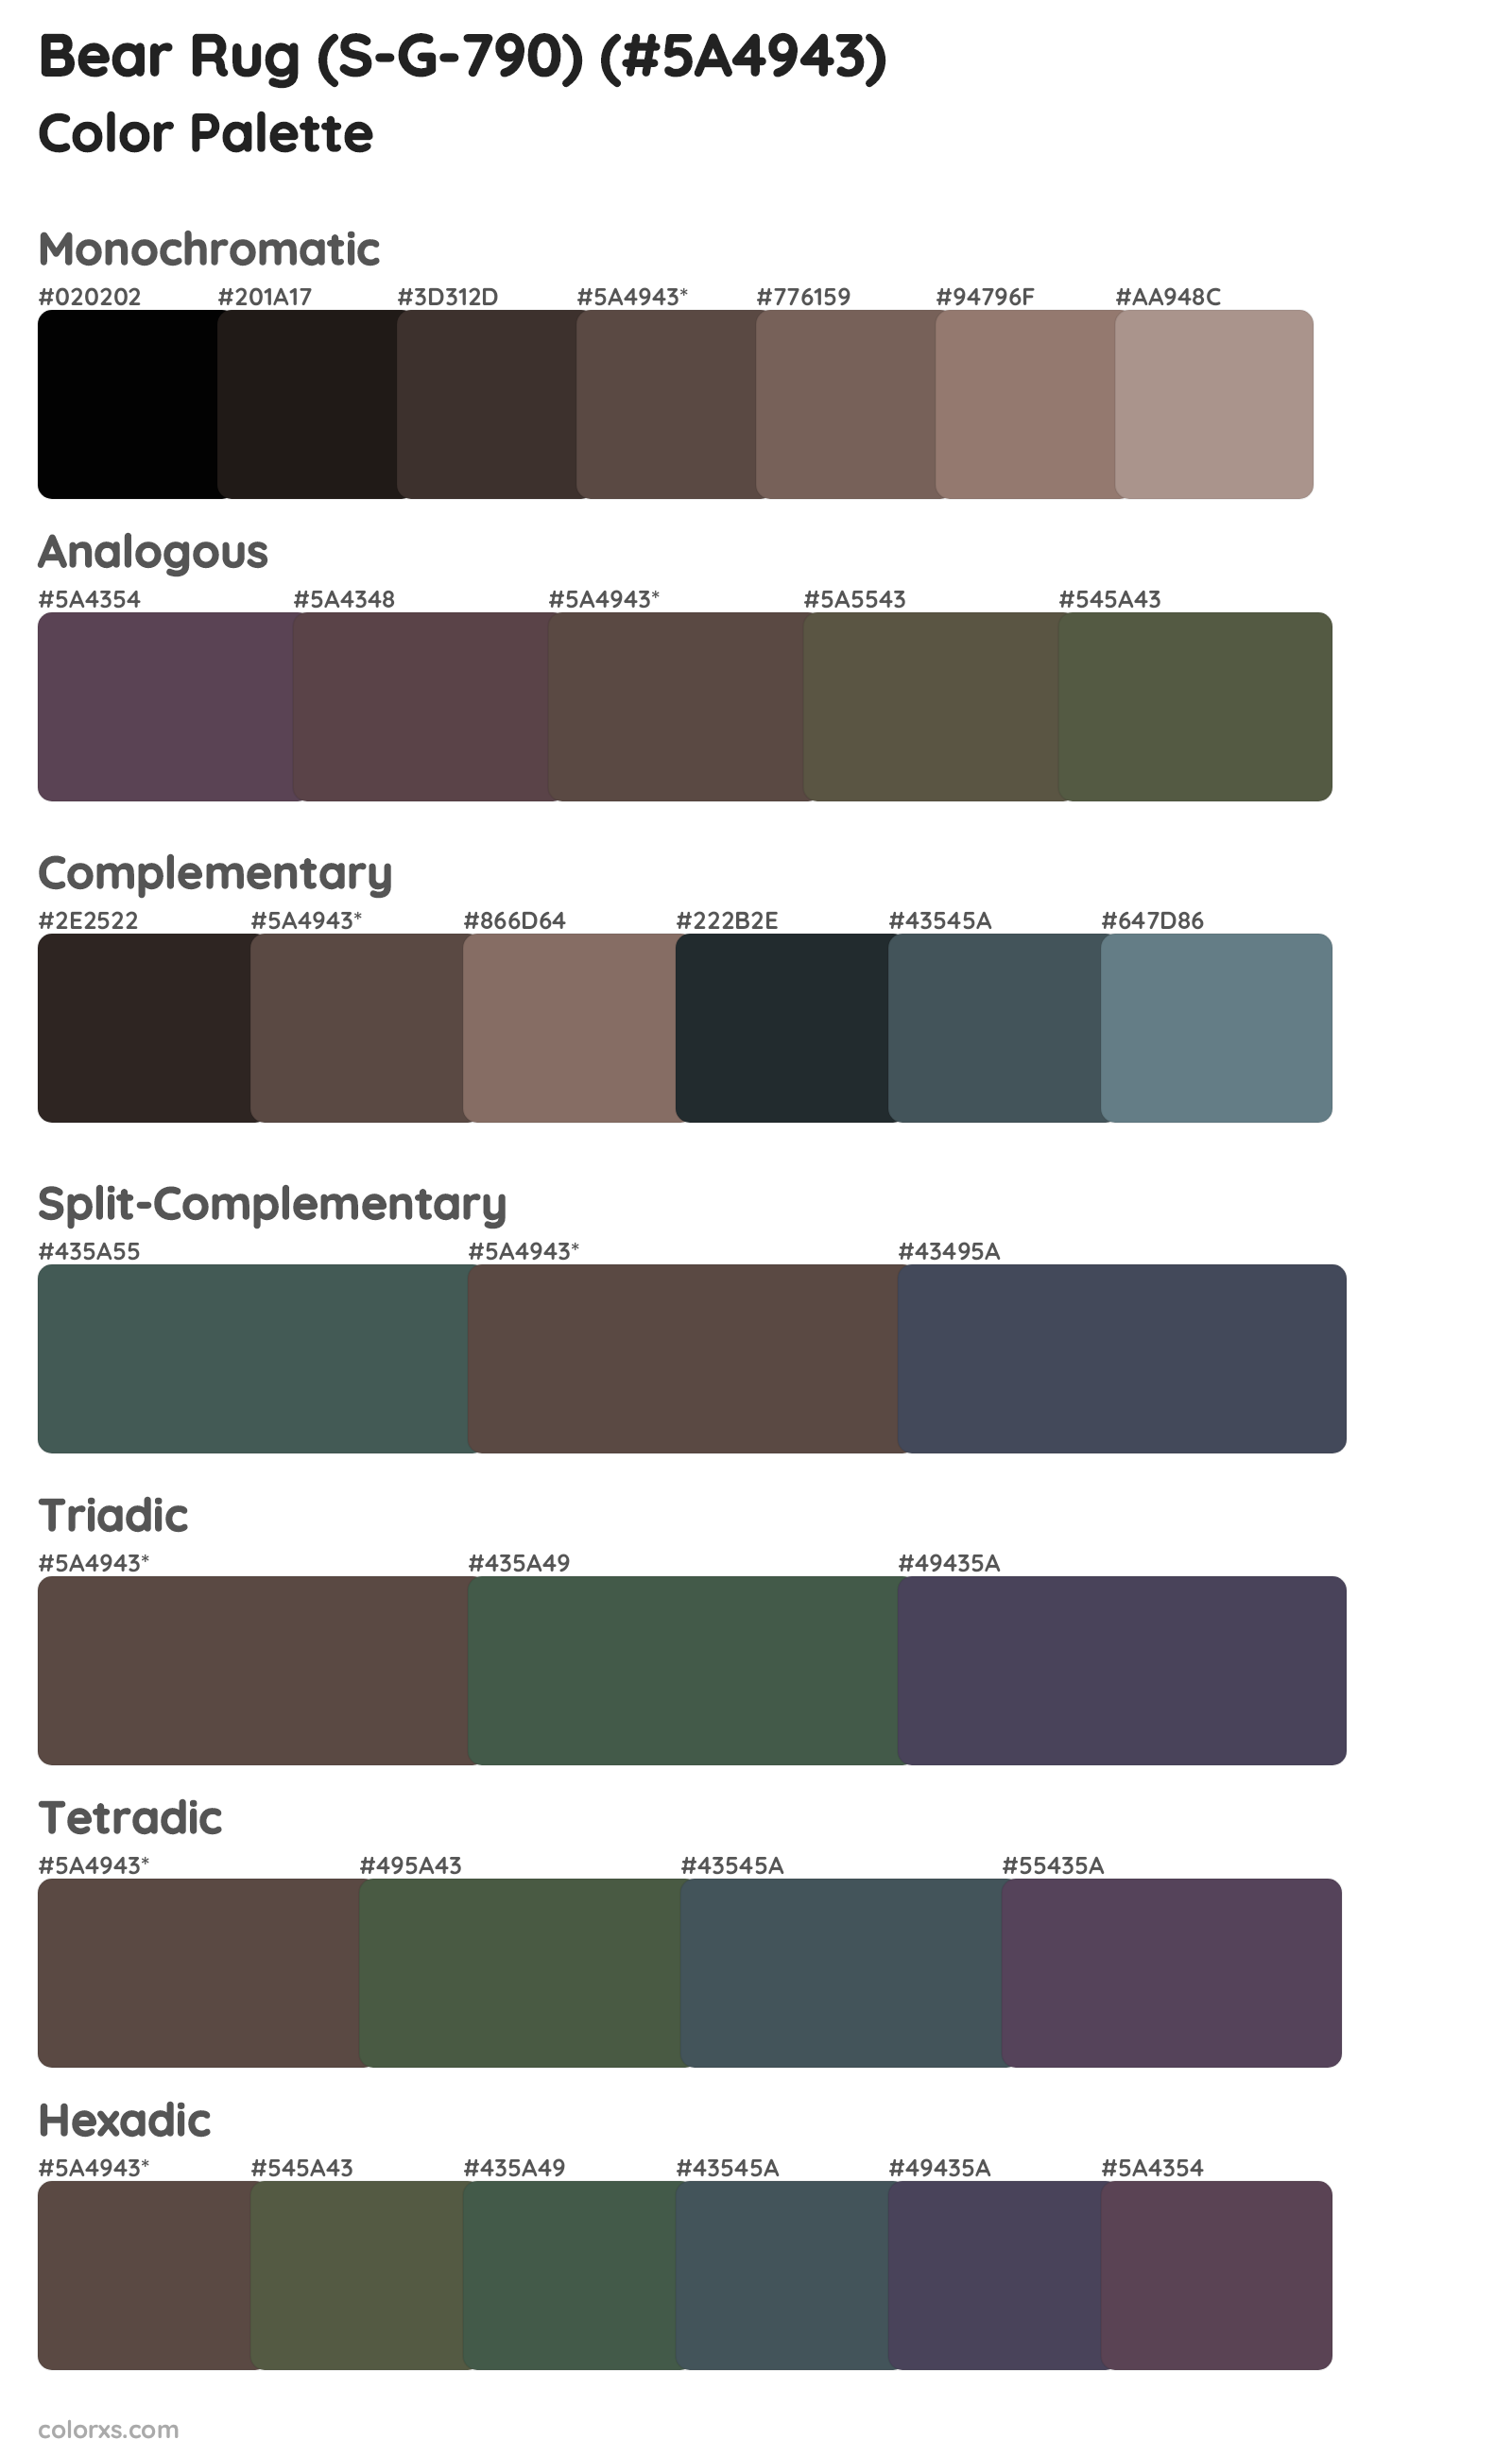 Bear Rug (S-G-790) Color Scheme Palettes